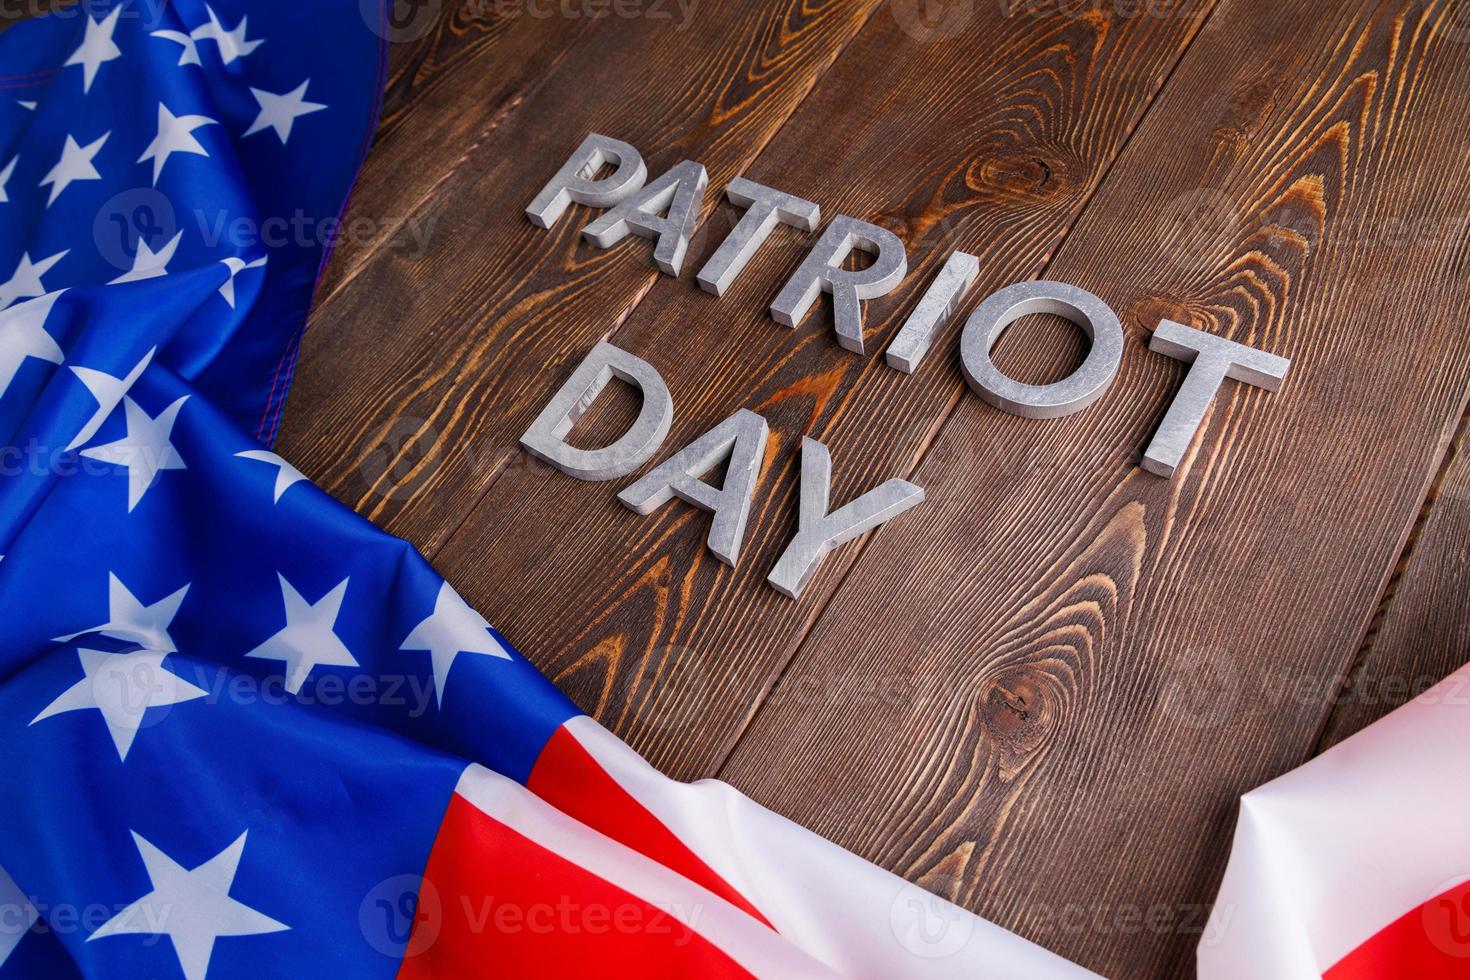 les mots patriot day posés avec des lettres en métal argenté sur la surface de la planche de bois avec le drapeau usa froissé photo